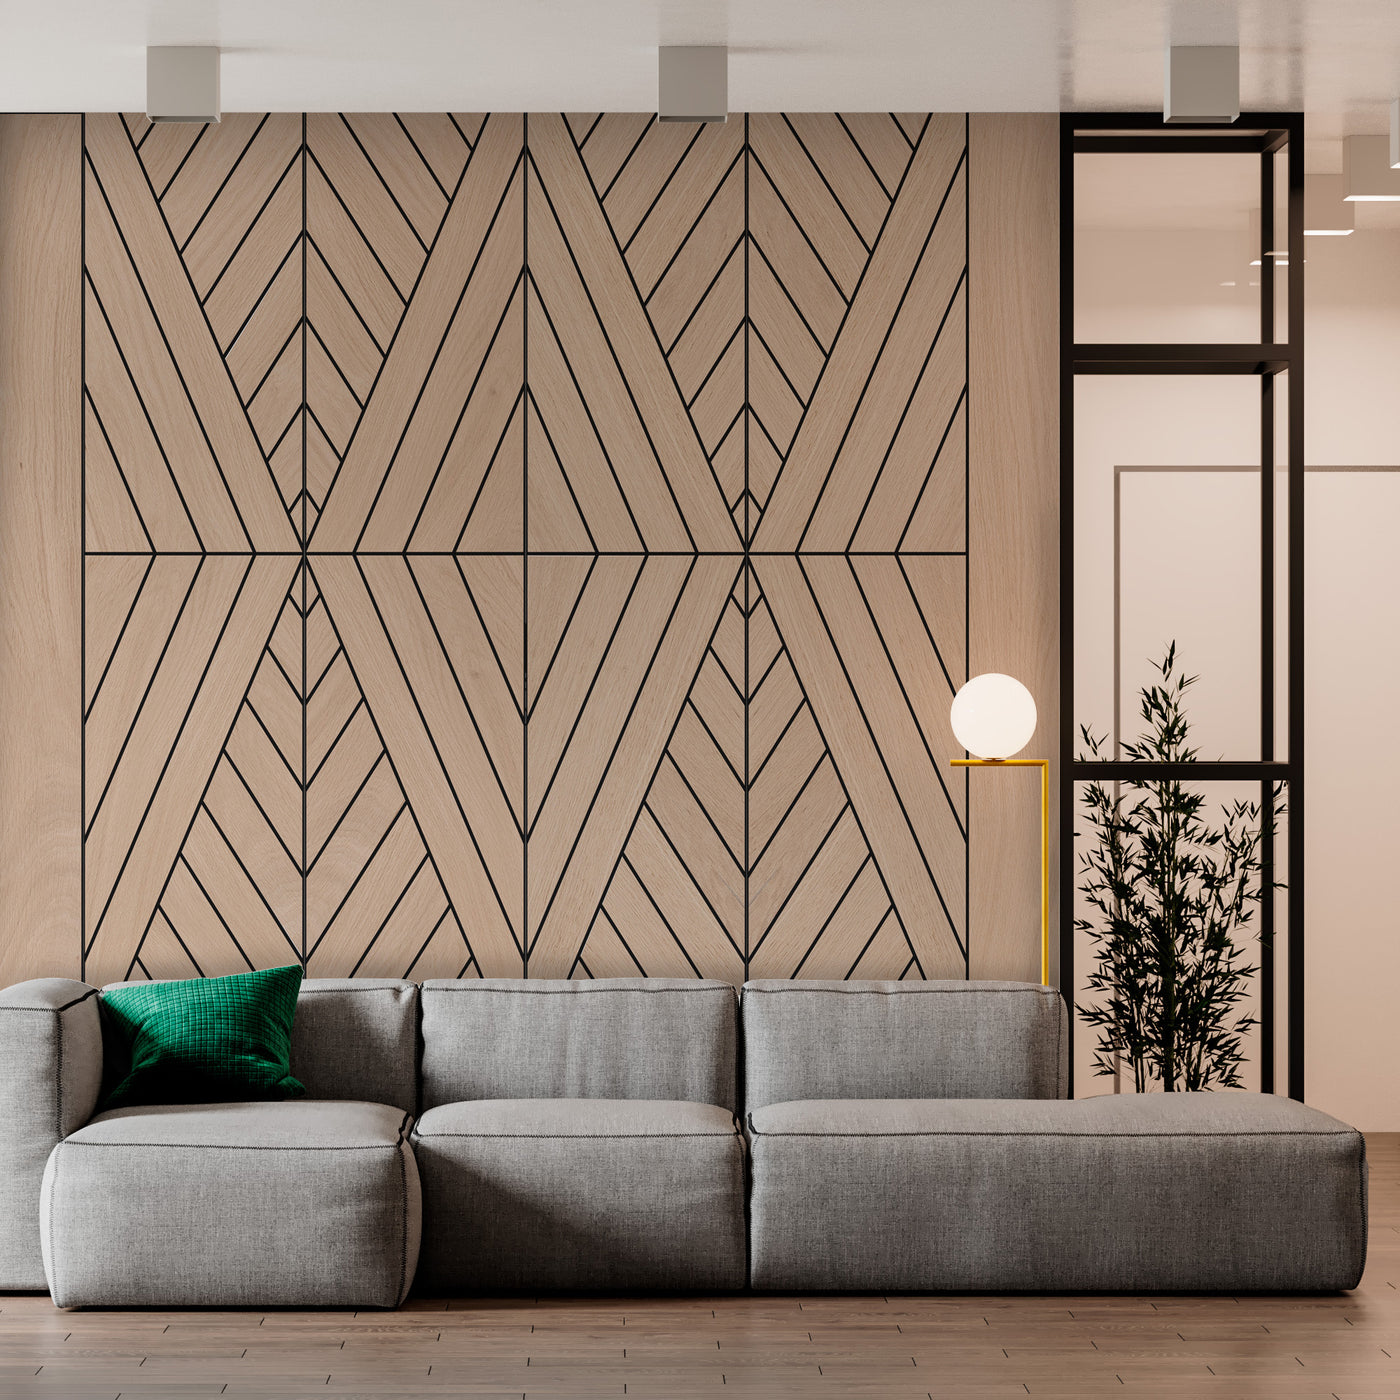 EDO Big Diamond Oak Decorative Wood Wall Panel